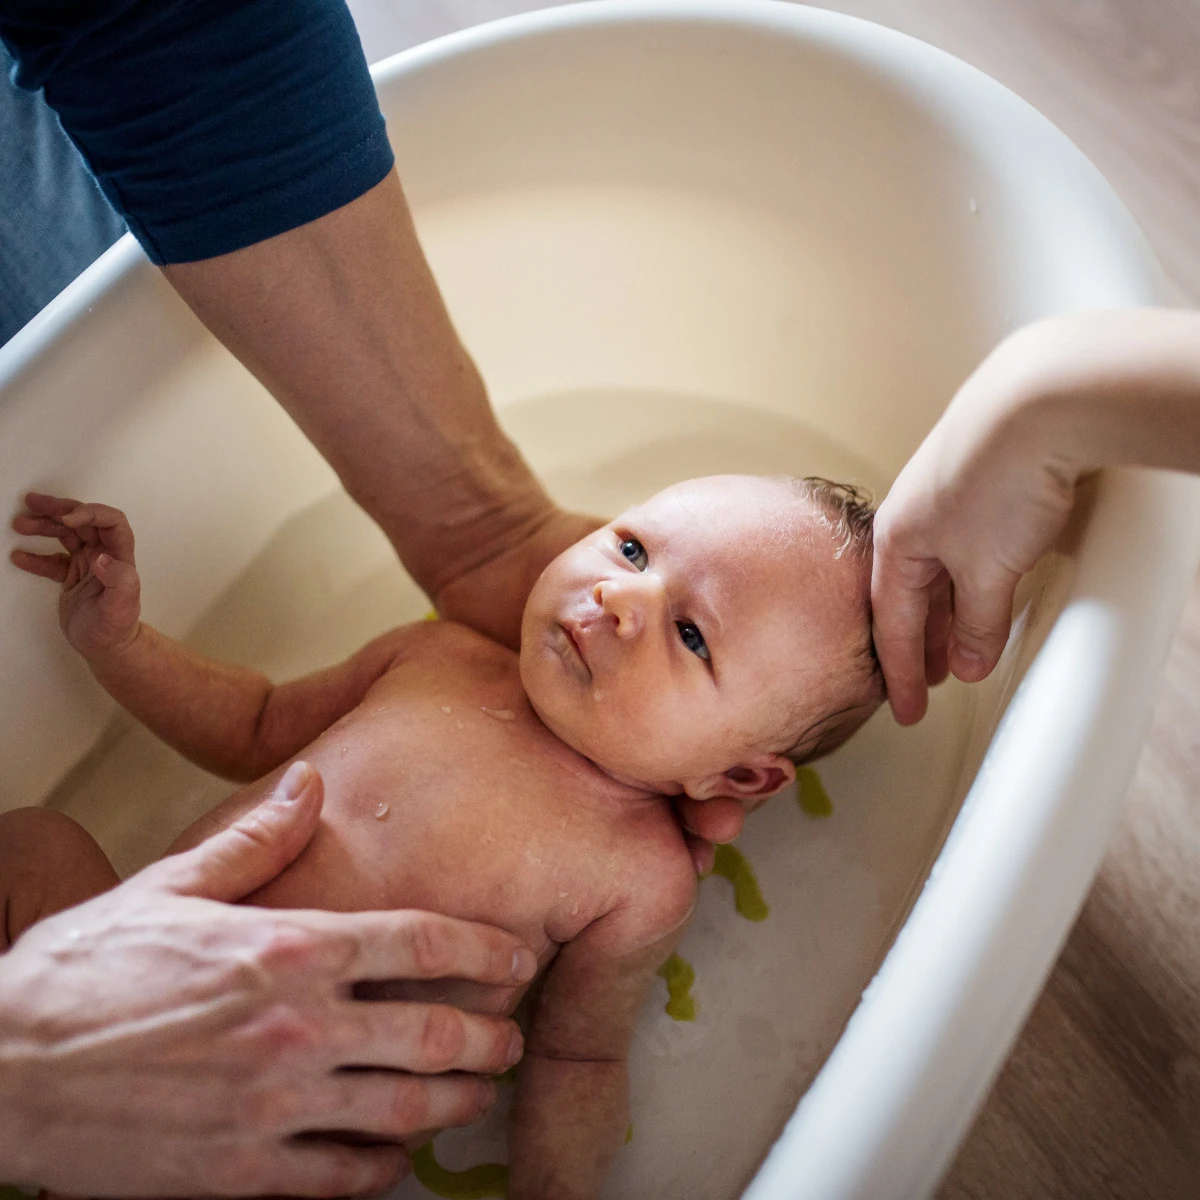  Baby wird in einer kleinen Badewanne gebadet 